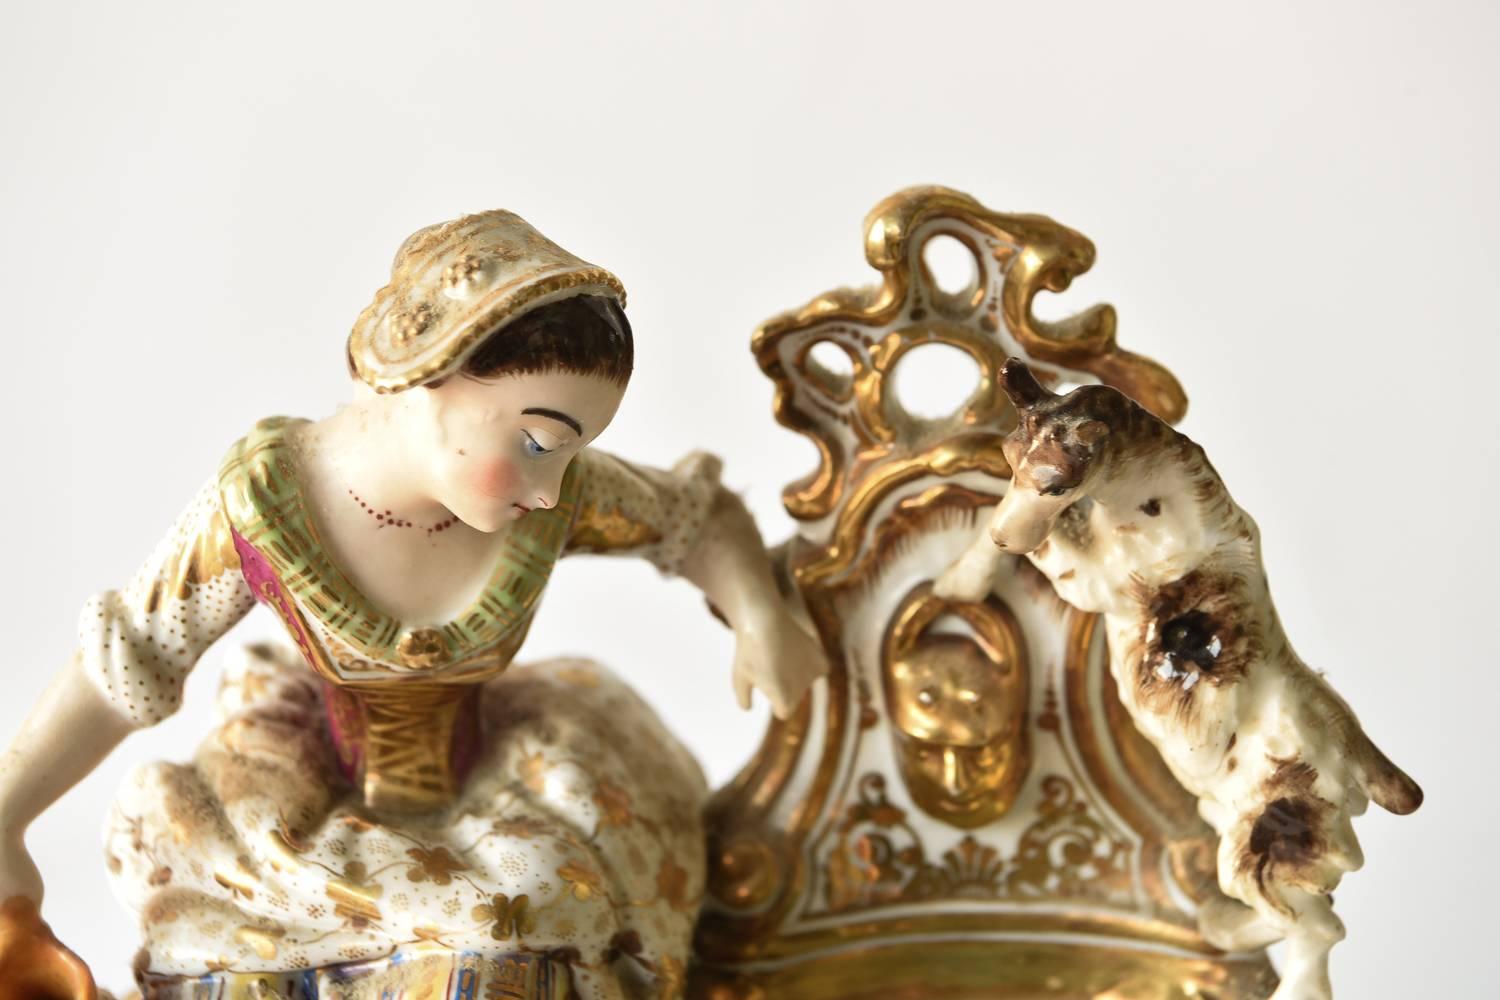 Diese französische Porzellanuhr stellt ein Bauernmädchen dar, das mit seinem Hund Wasser holt. Die Uhr besteht aus zwei Teilen. Von Jacob Petit. Der Sockel ist charakteristisch für das Rokoko und trägt zum extravaganten Erscheinungsbild bei.